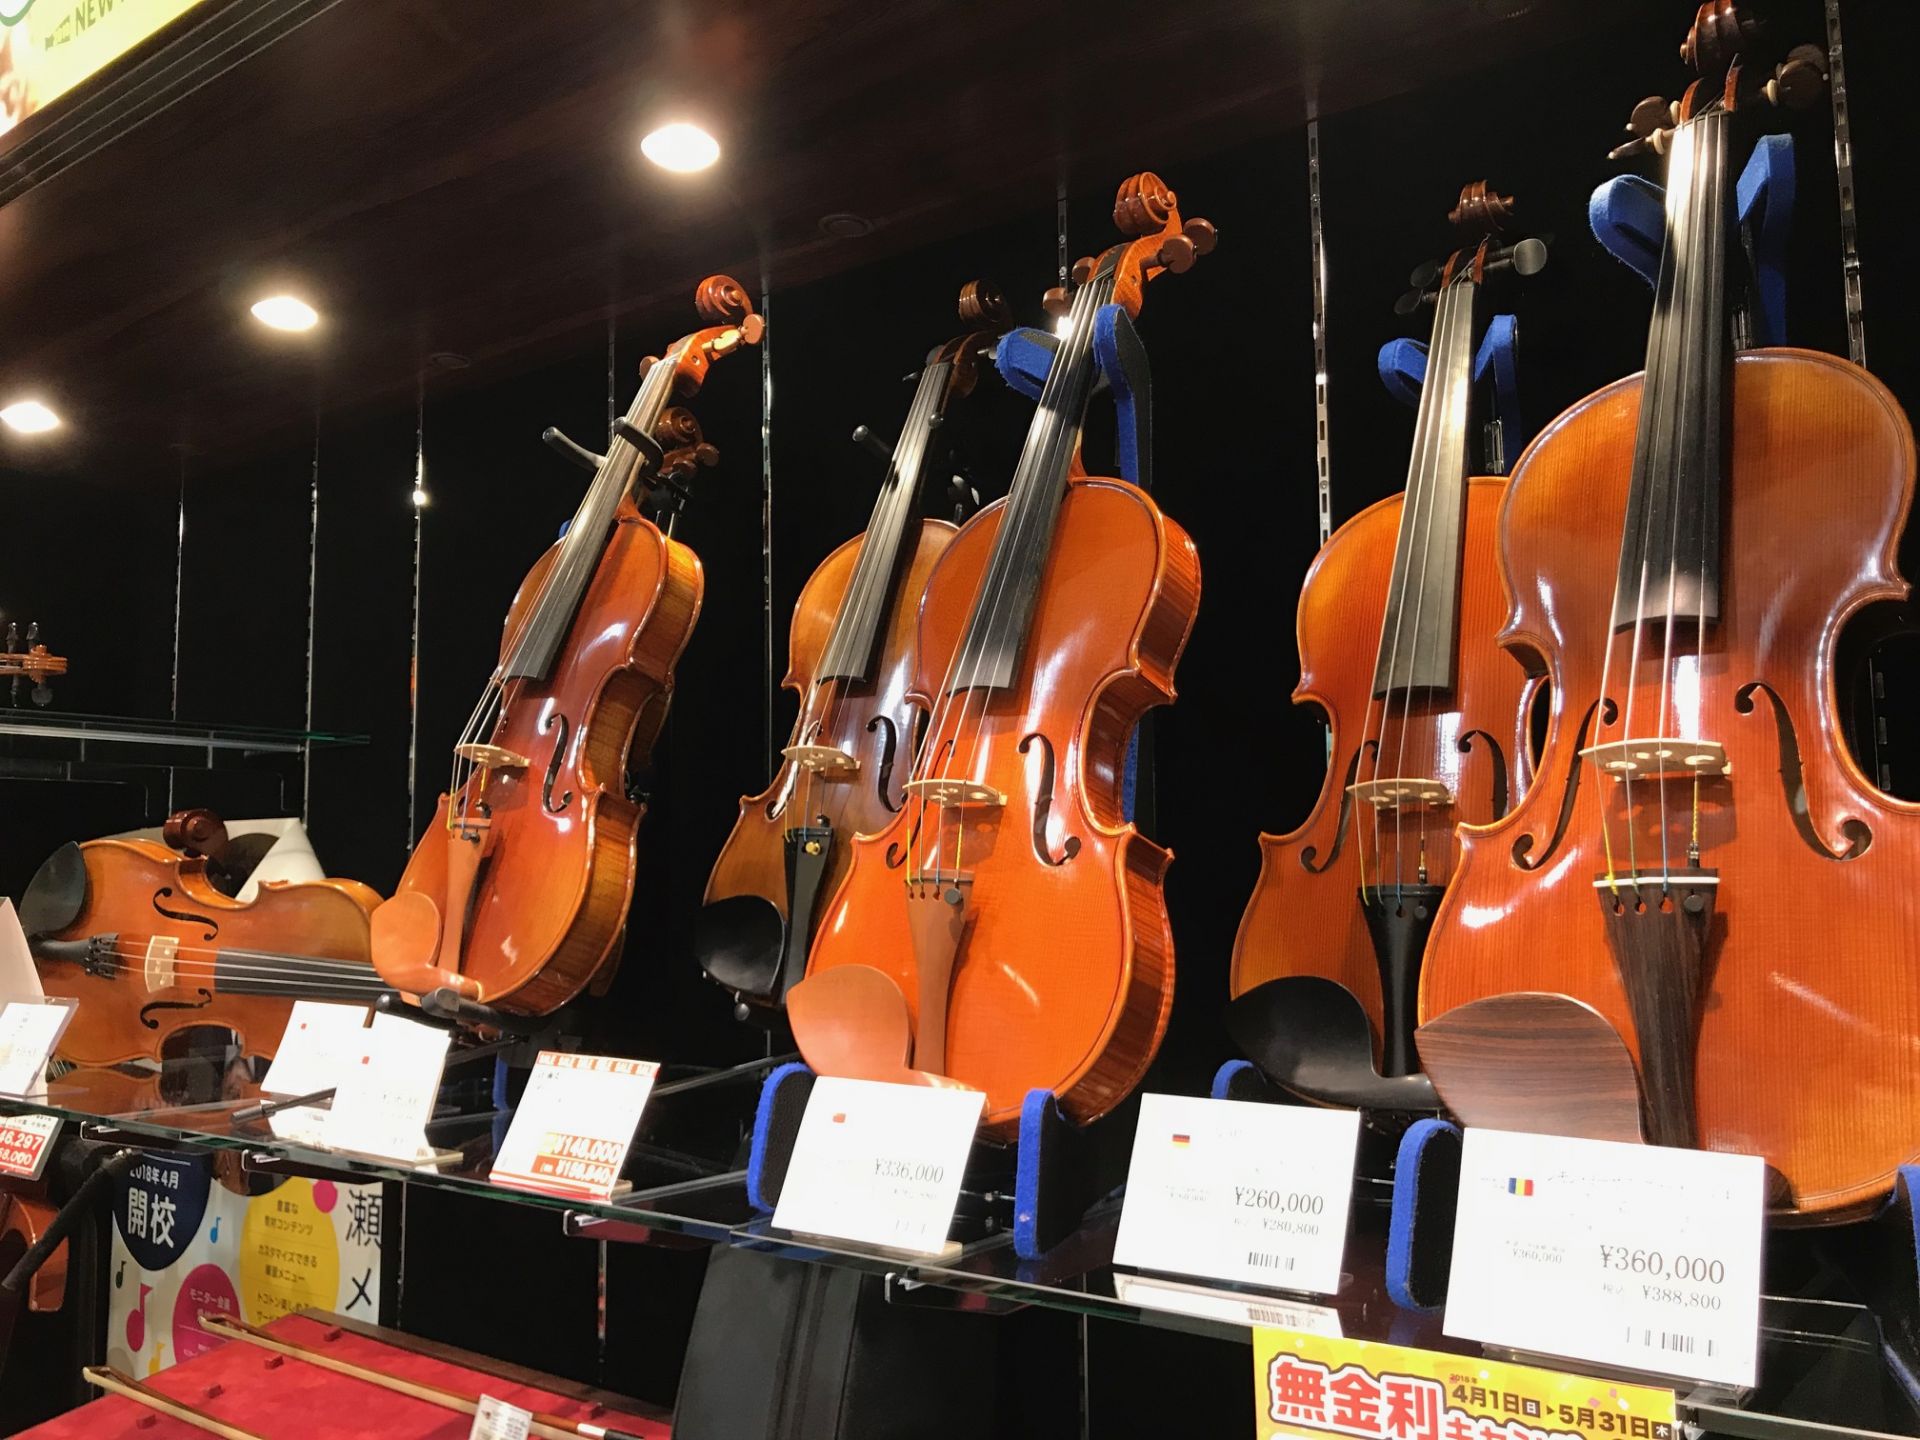 [https://www.shimamura.co.jp/shop/nagoya/information/20200718/11495::title=] ---- *これからバイオリンを始めたい方にピッタリのバイオリンを取り揃えました これからバイオリンを始めたいとお考えの方や、2台目のバイオリンを […]